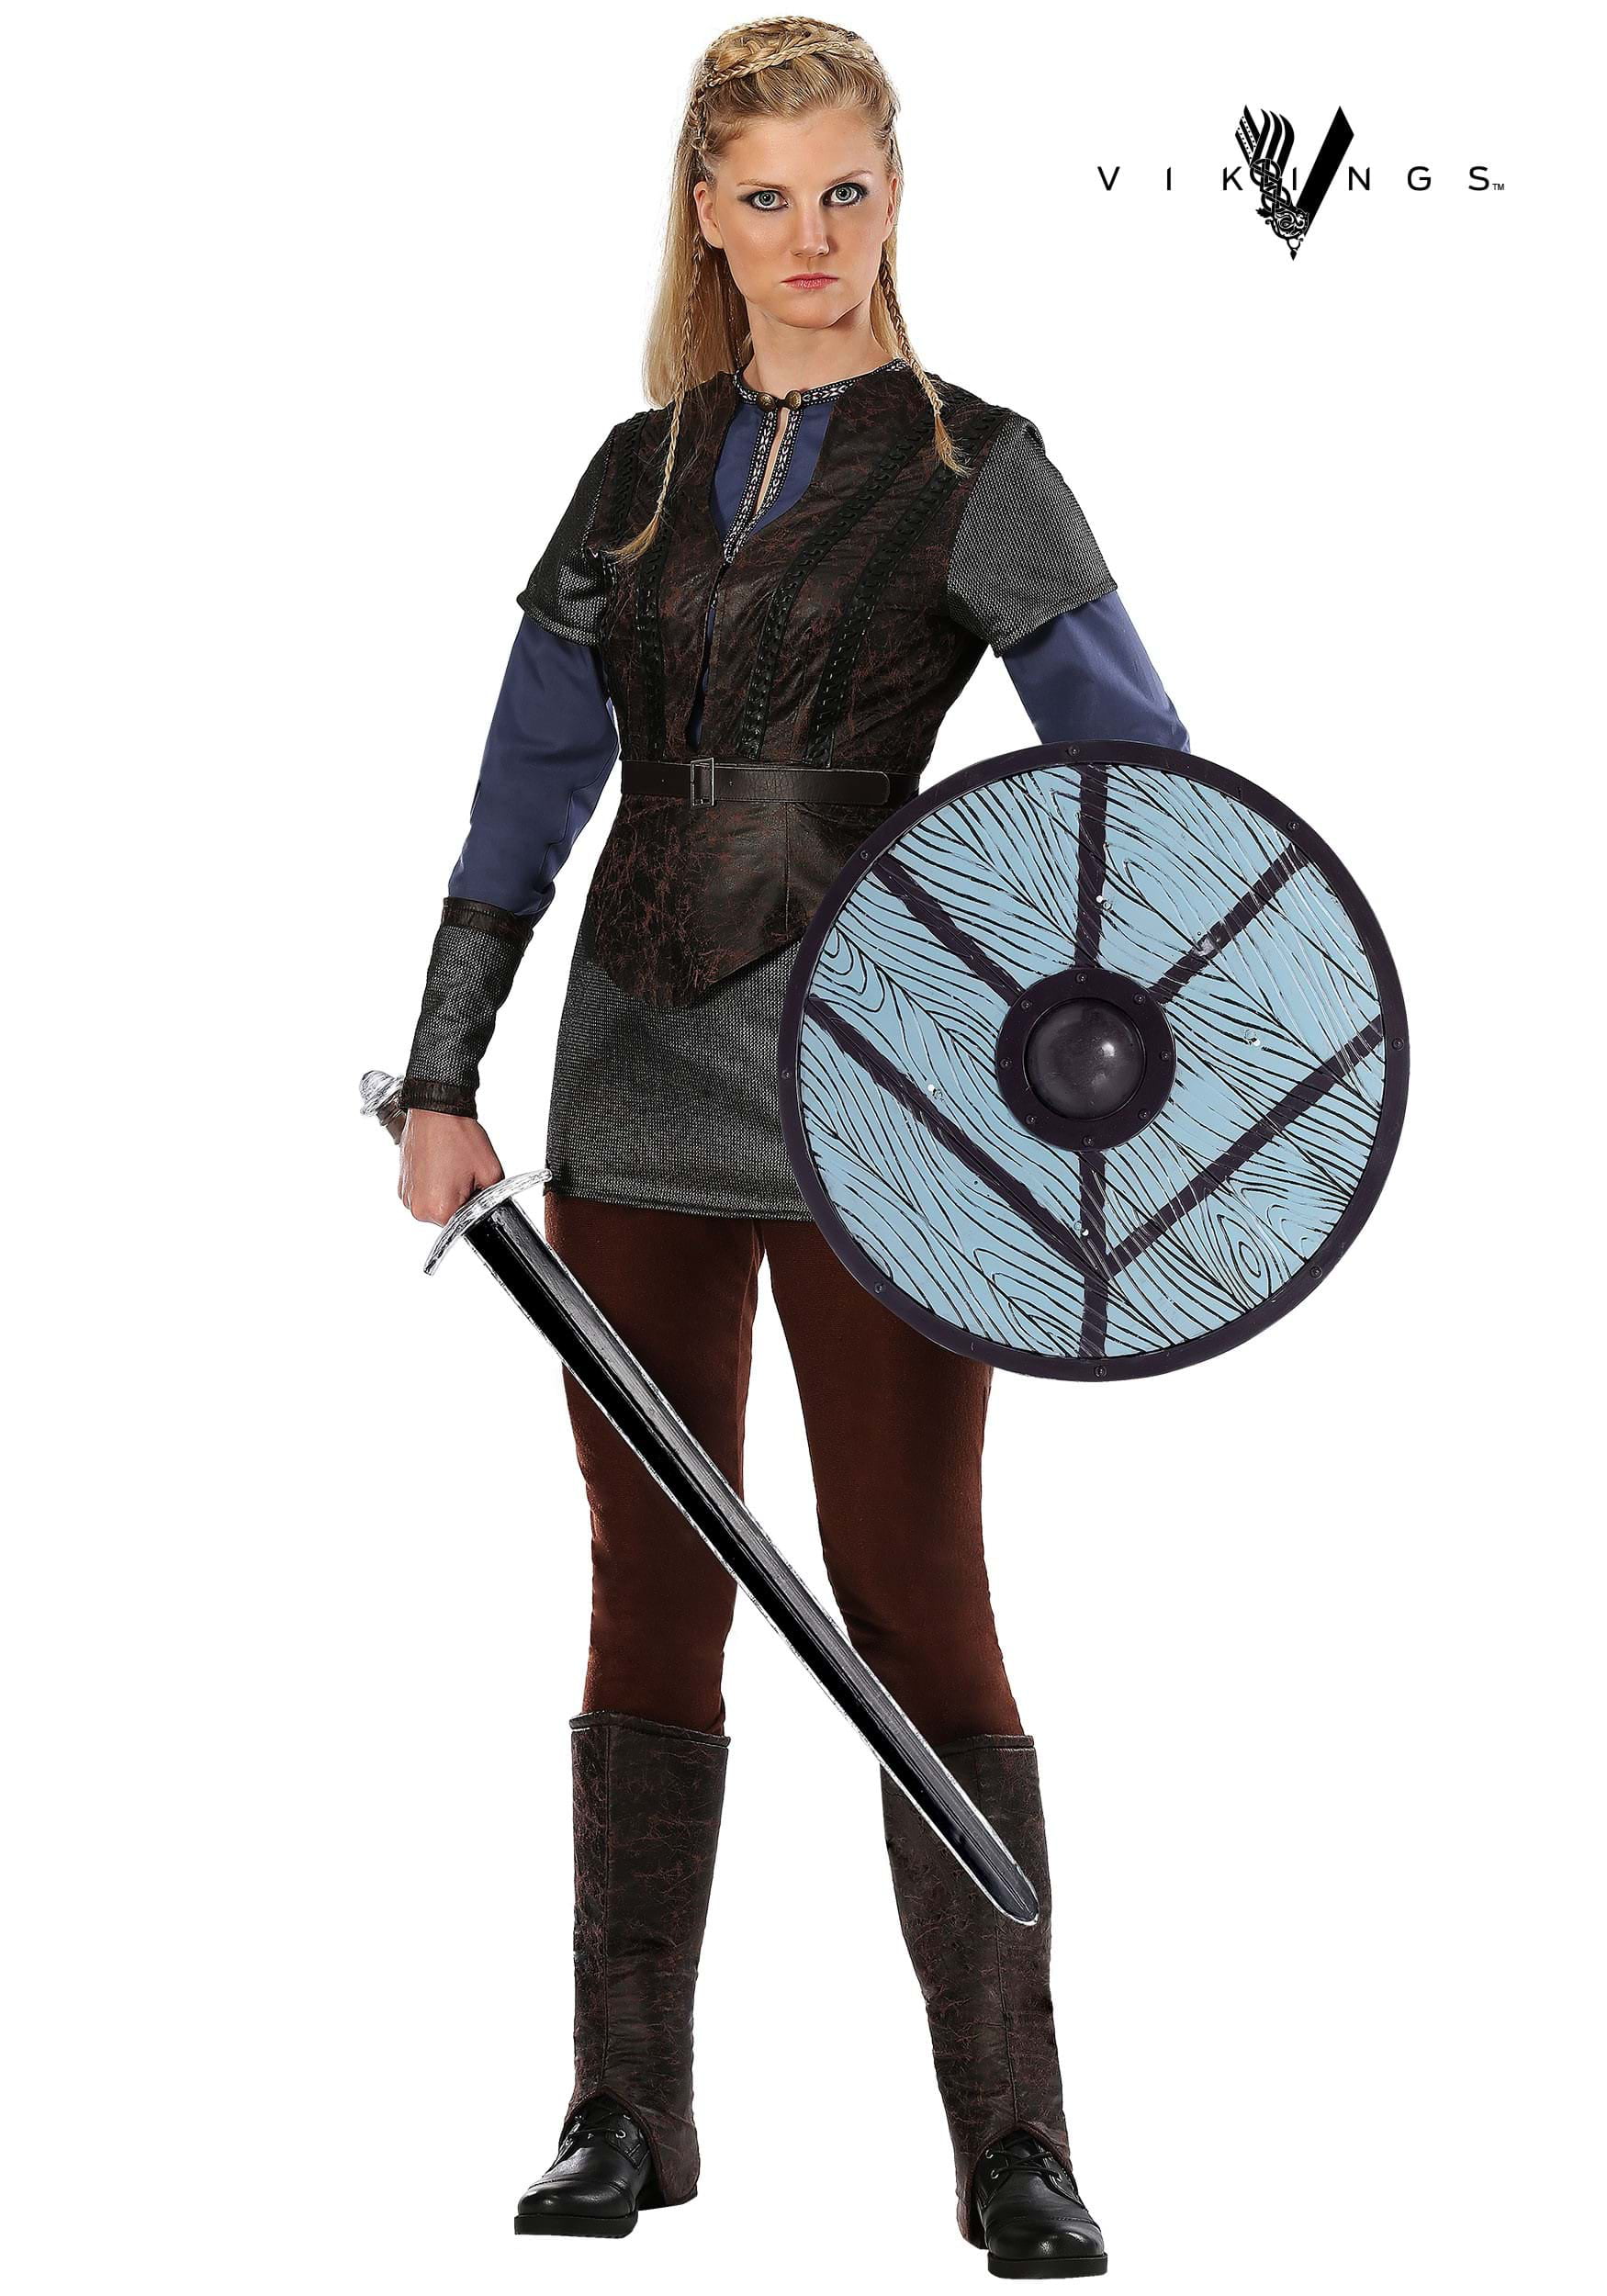 Womens Viking costume